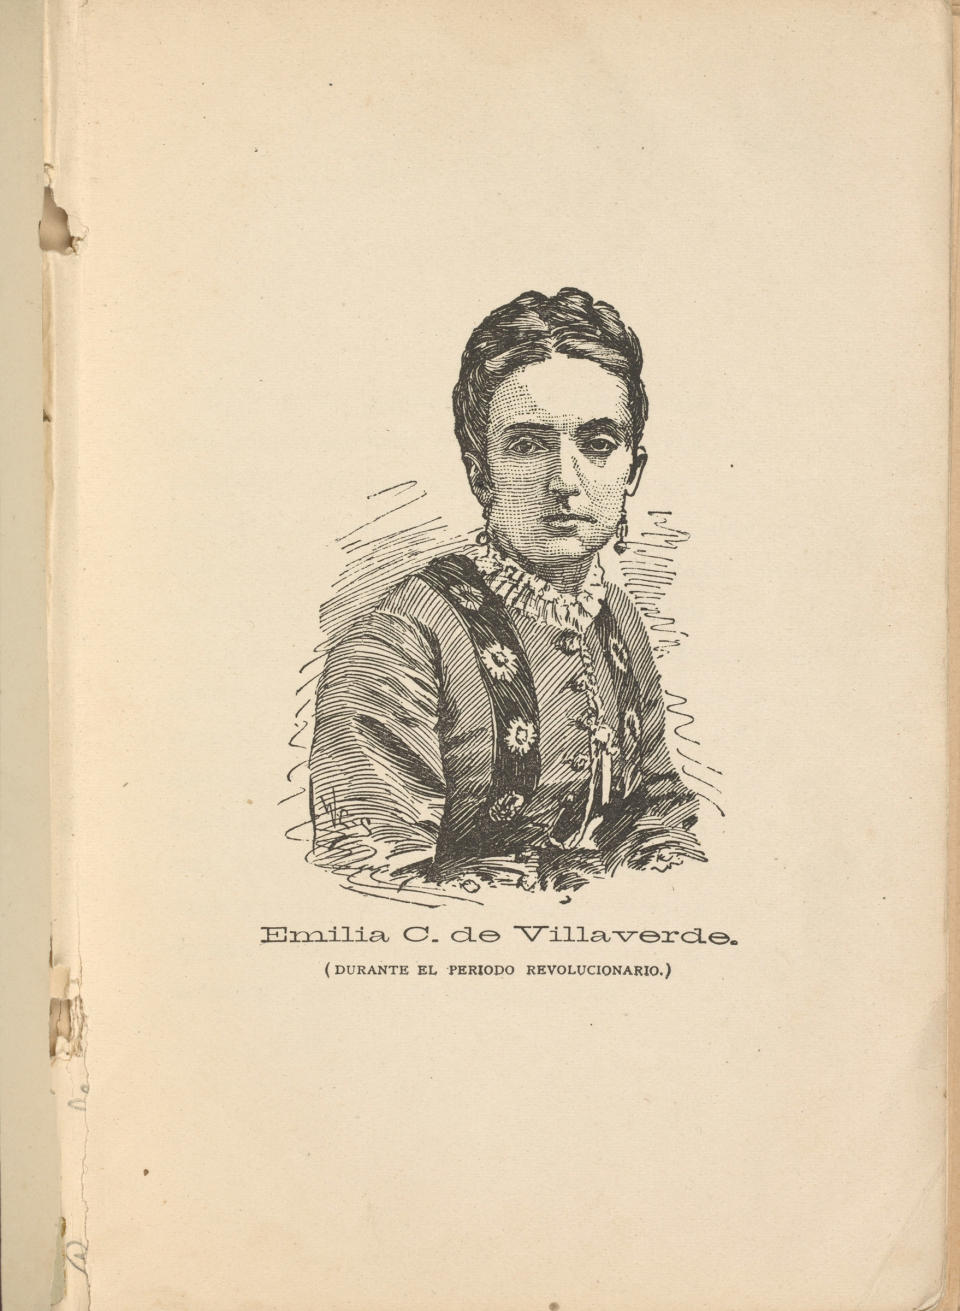 Portrait of Emilia Casanova de Villaverde, 1874. | The New York Public Library